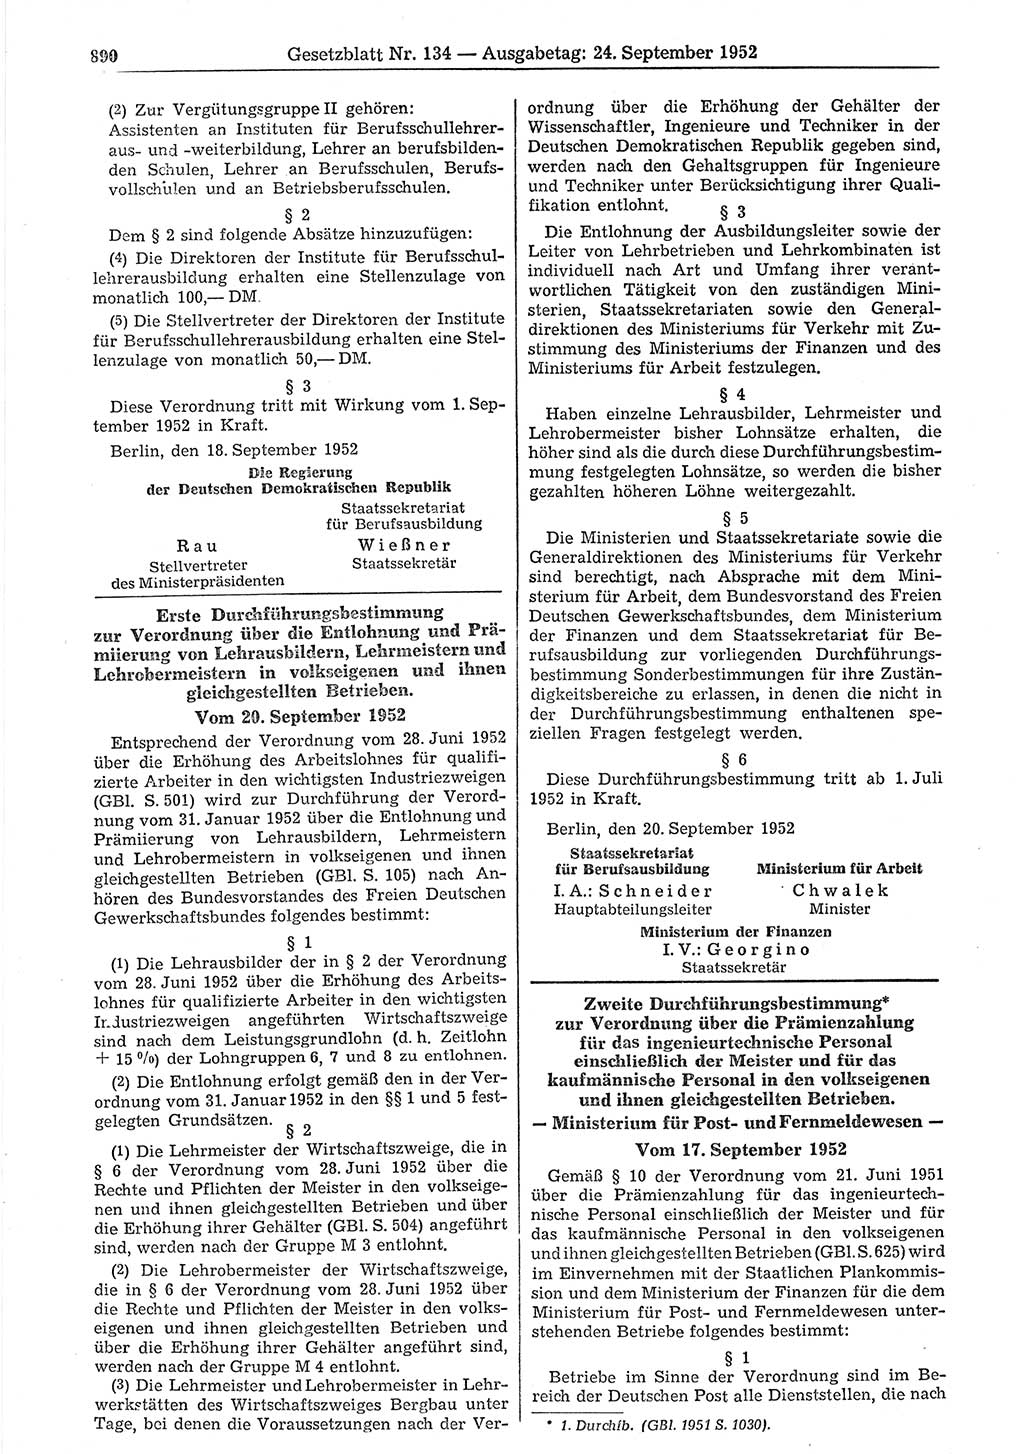 Gesetzblatt (GBl.) der Deutschen Demokratischen Republik (DDR) 1952, Seite 890 (GBl. DDR 1952, S. 890)